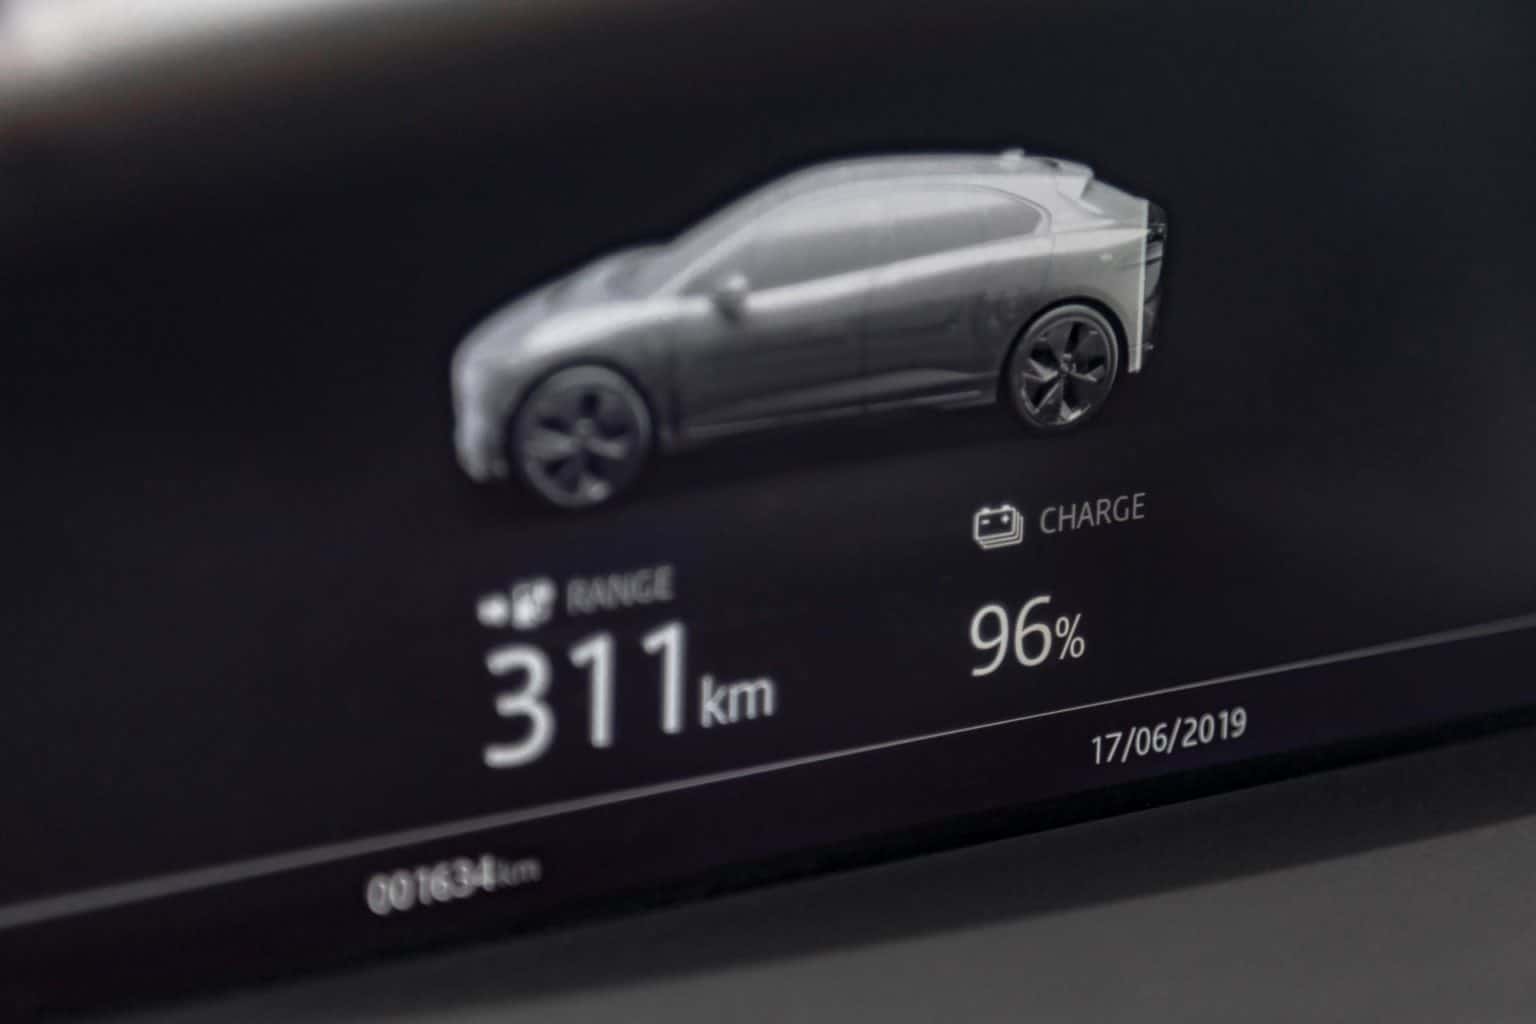 Thermische Optimierung soll Reichweite von E-Autos mehr als zehn Prozent steigern